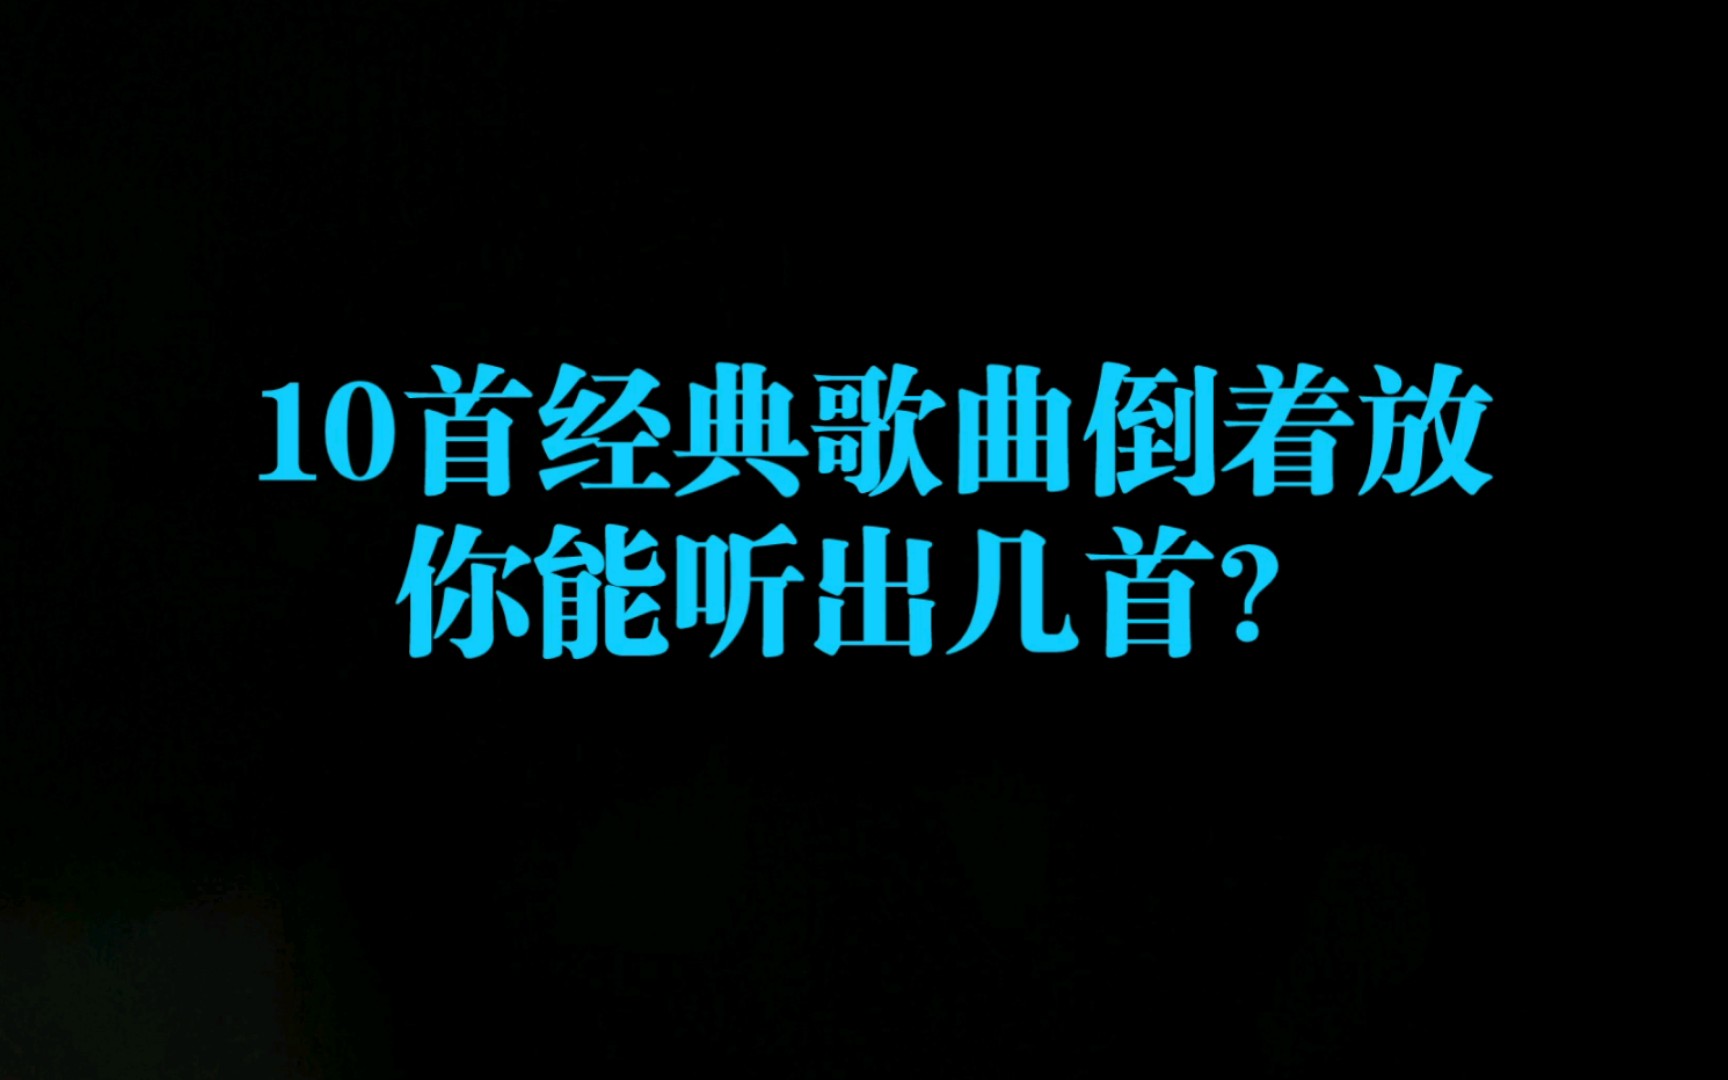 倒放挑战（1）:10首华语乐坛耳熟能详的歌曲倒着放，你能听出几首？